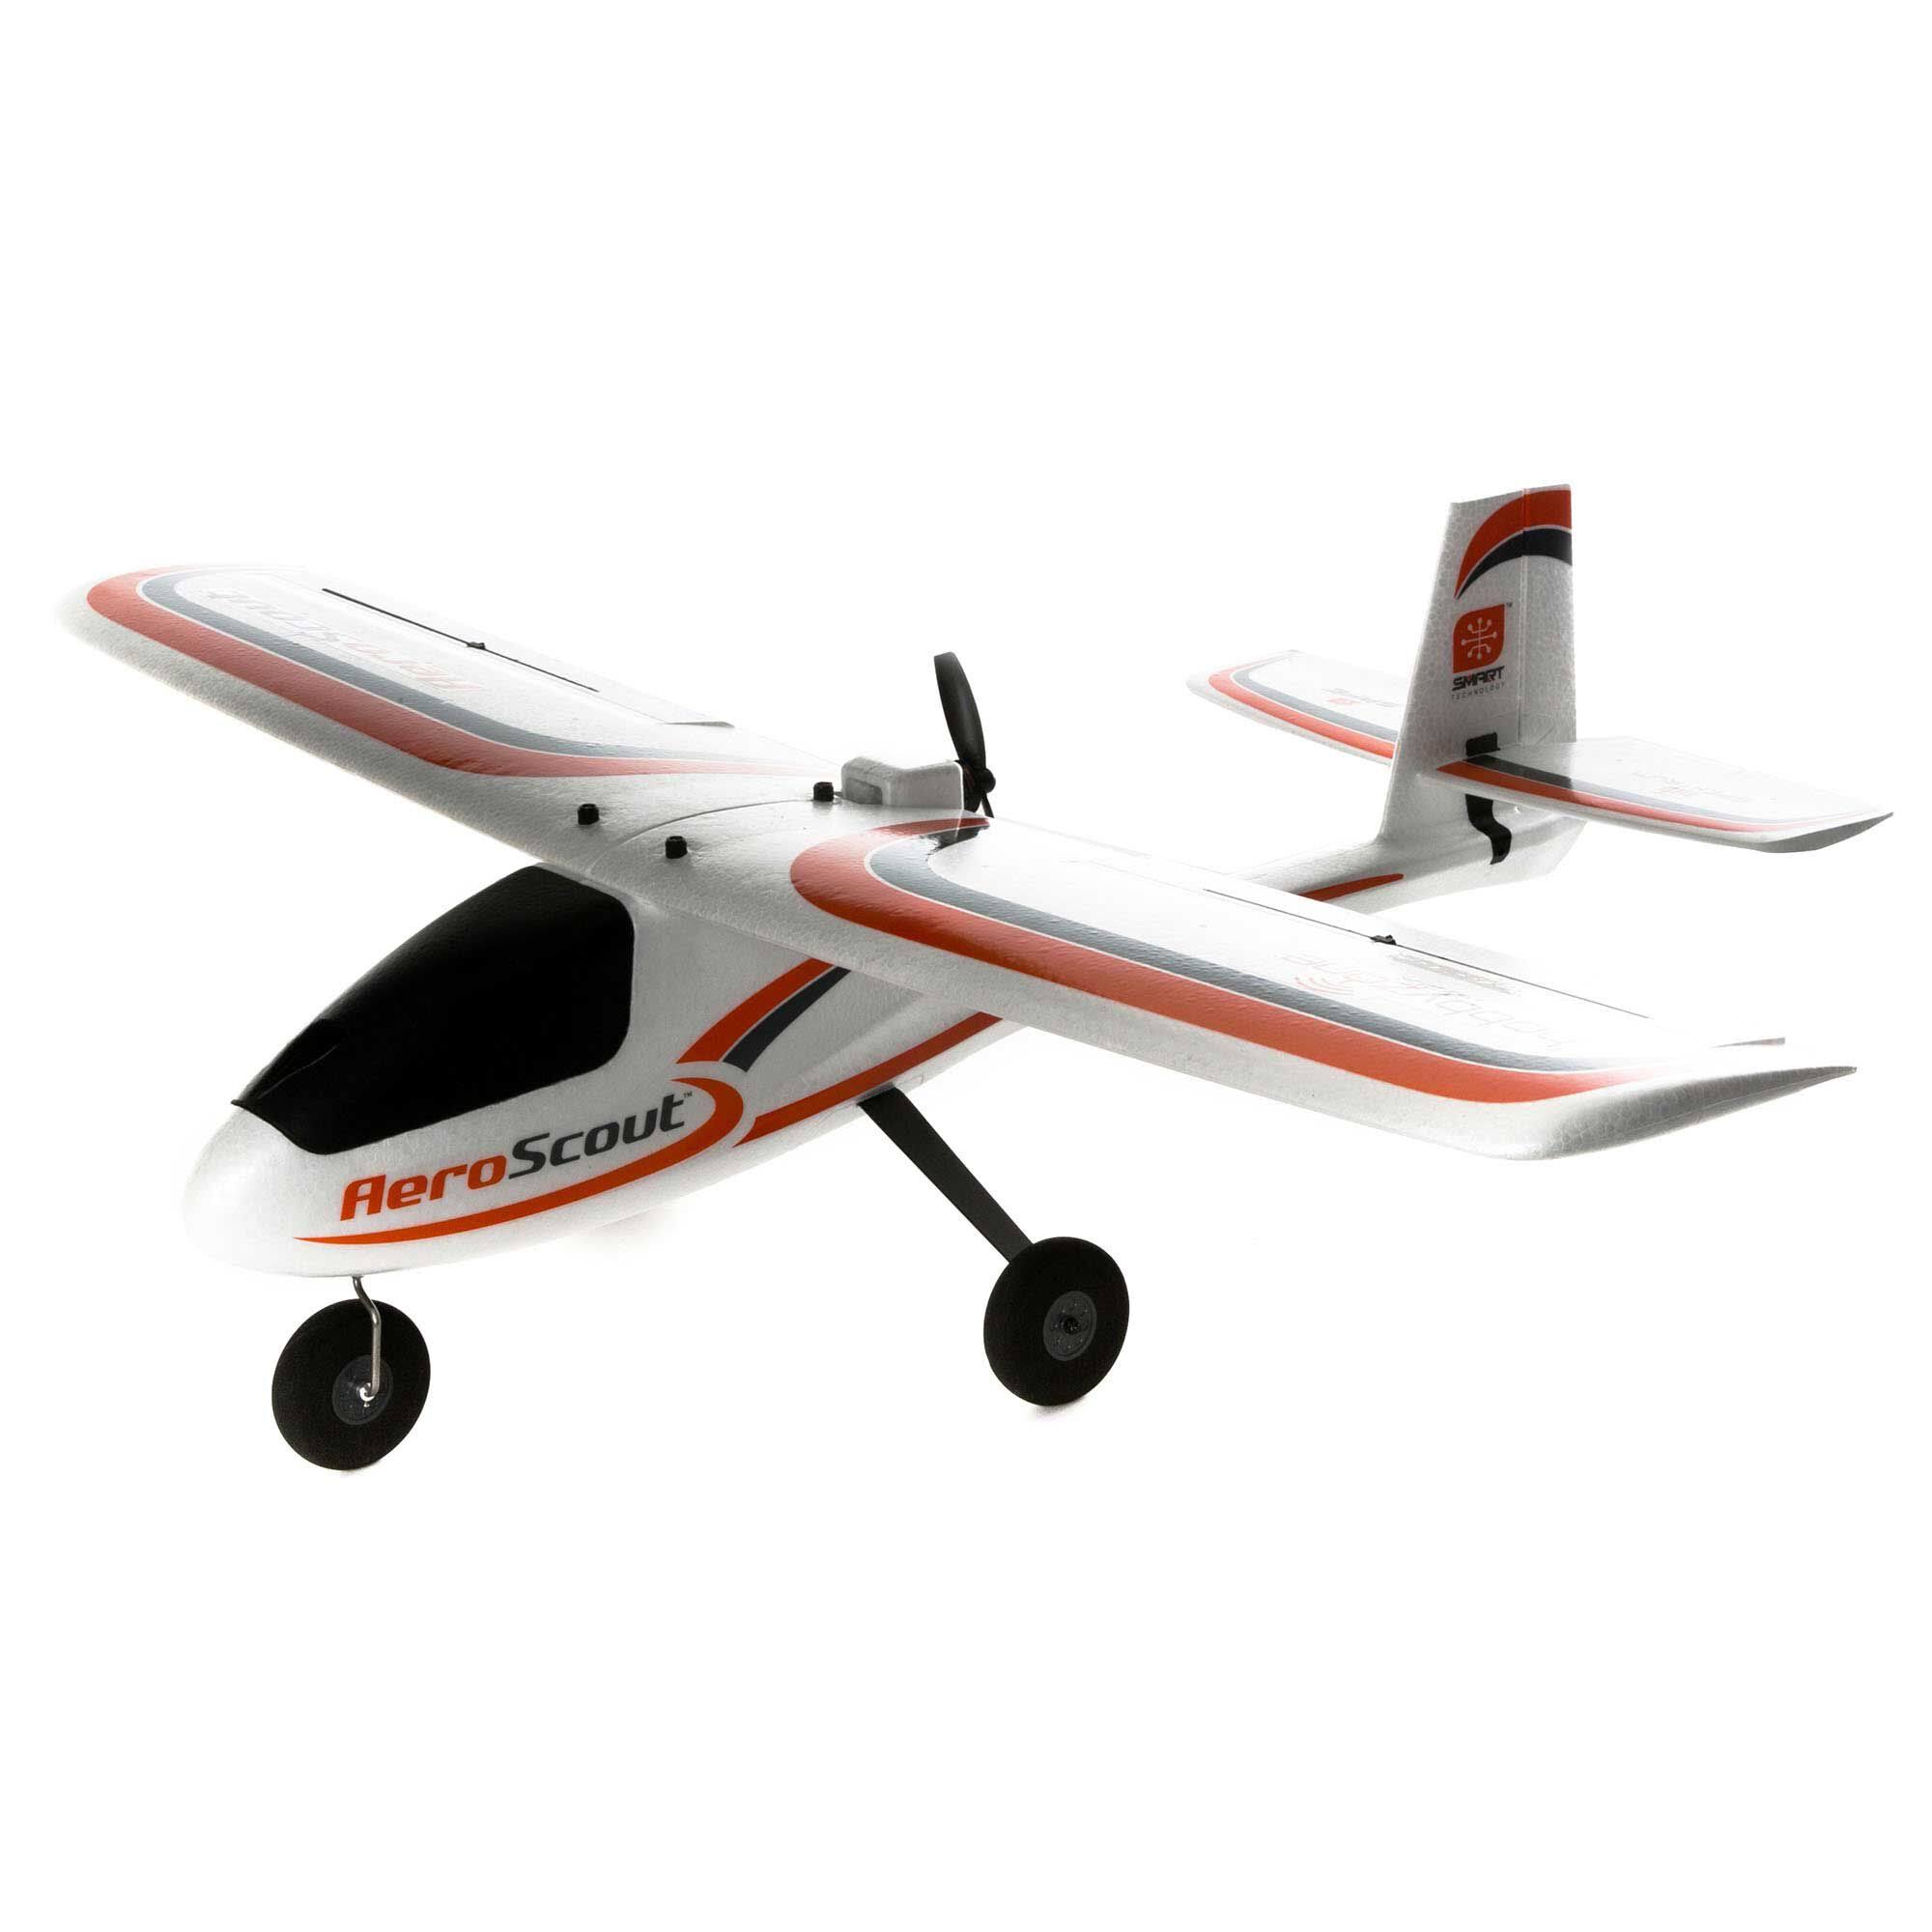 Hobbyzone AeroScout S 2 1.1m RTF Basic with Safe - HBZ380001